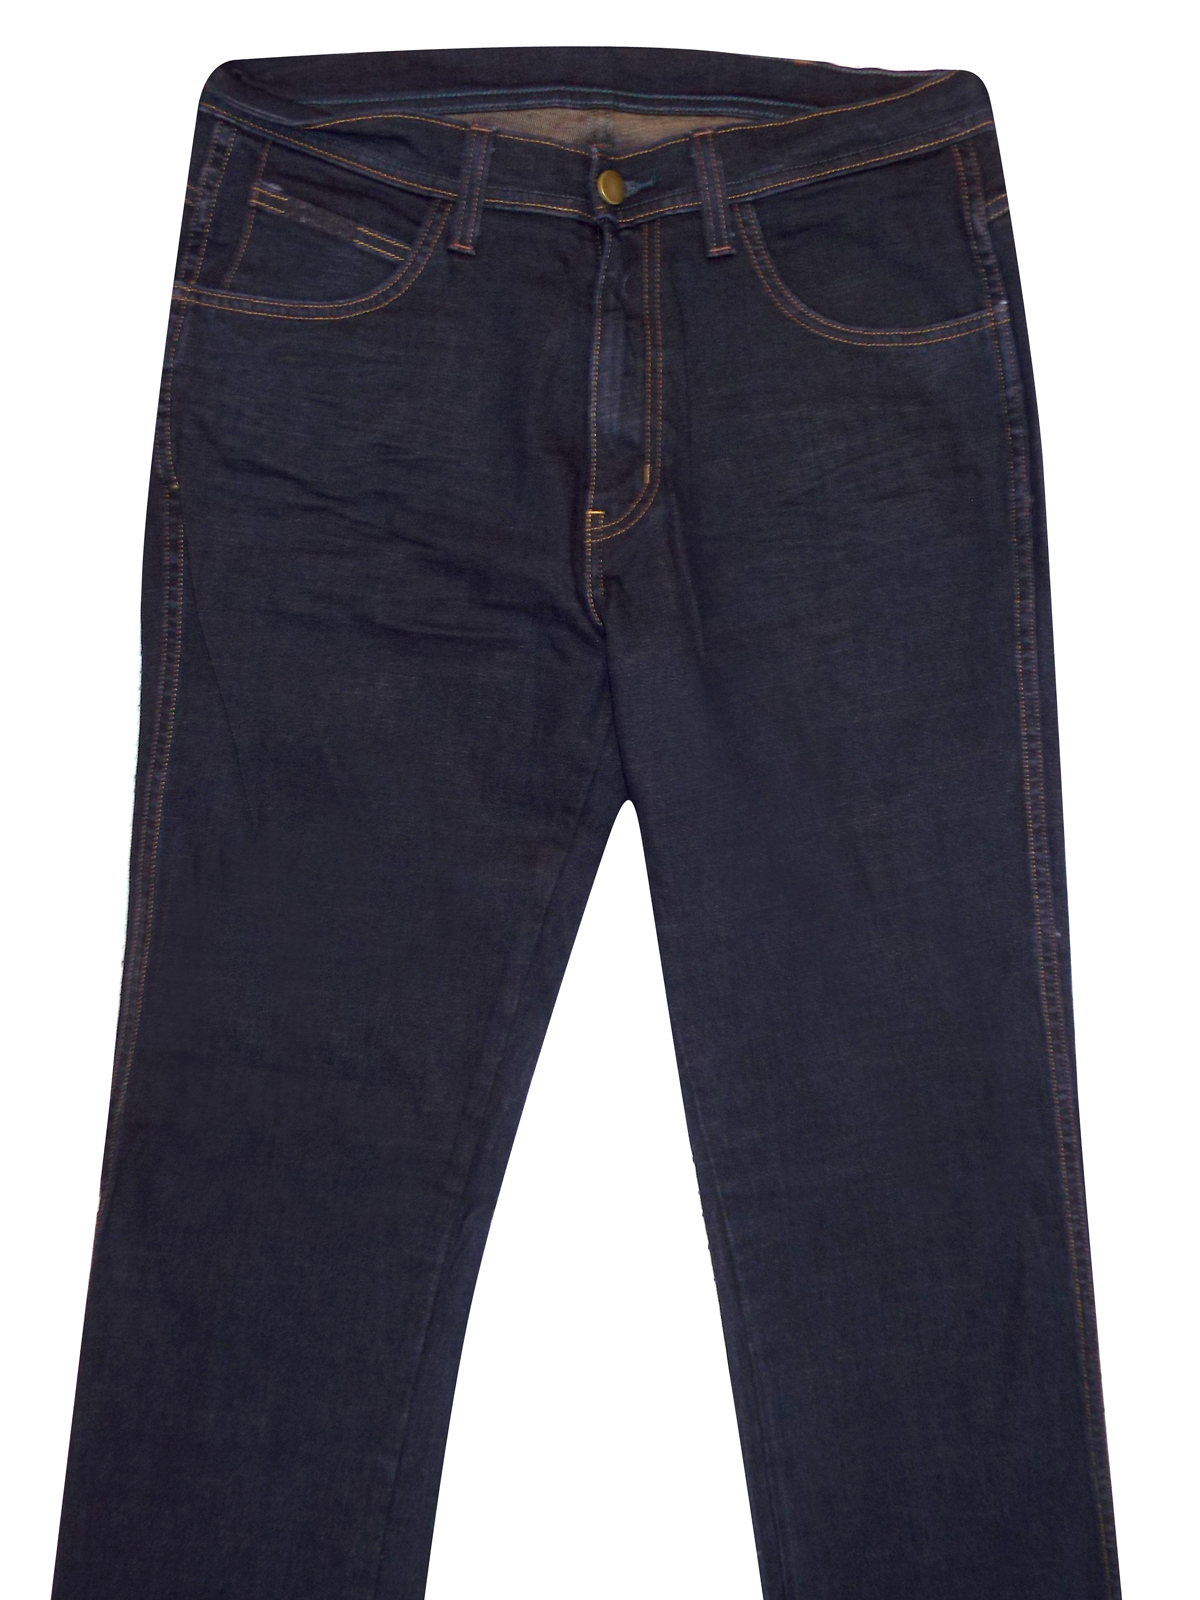 DARK-INDIGO Pure Cotton Straight Fit Denim Jeans - Waist Size 32 ...